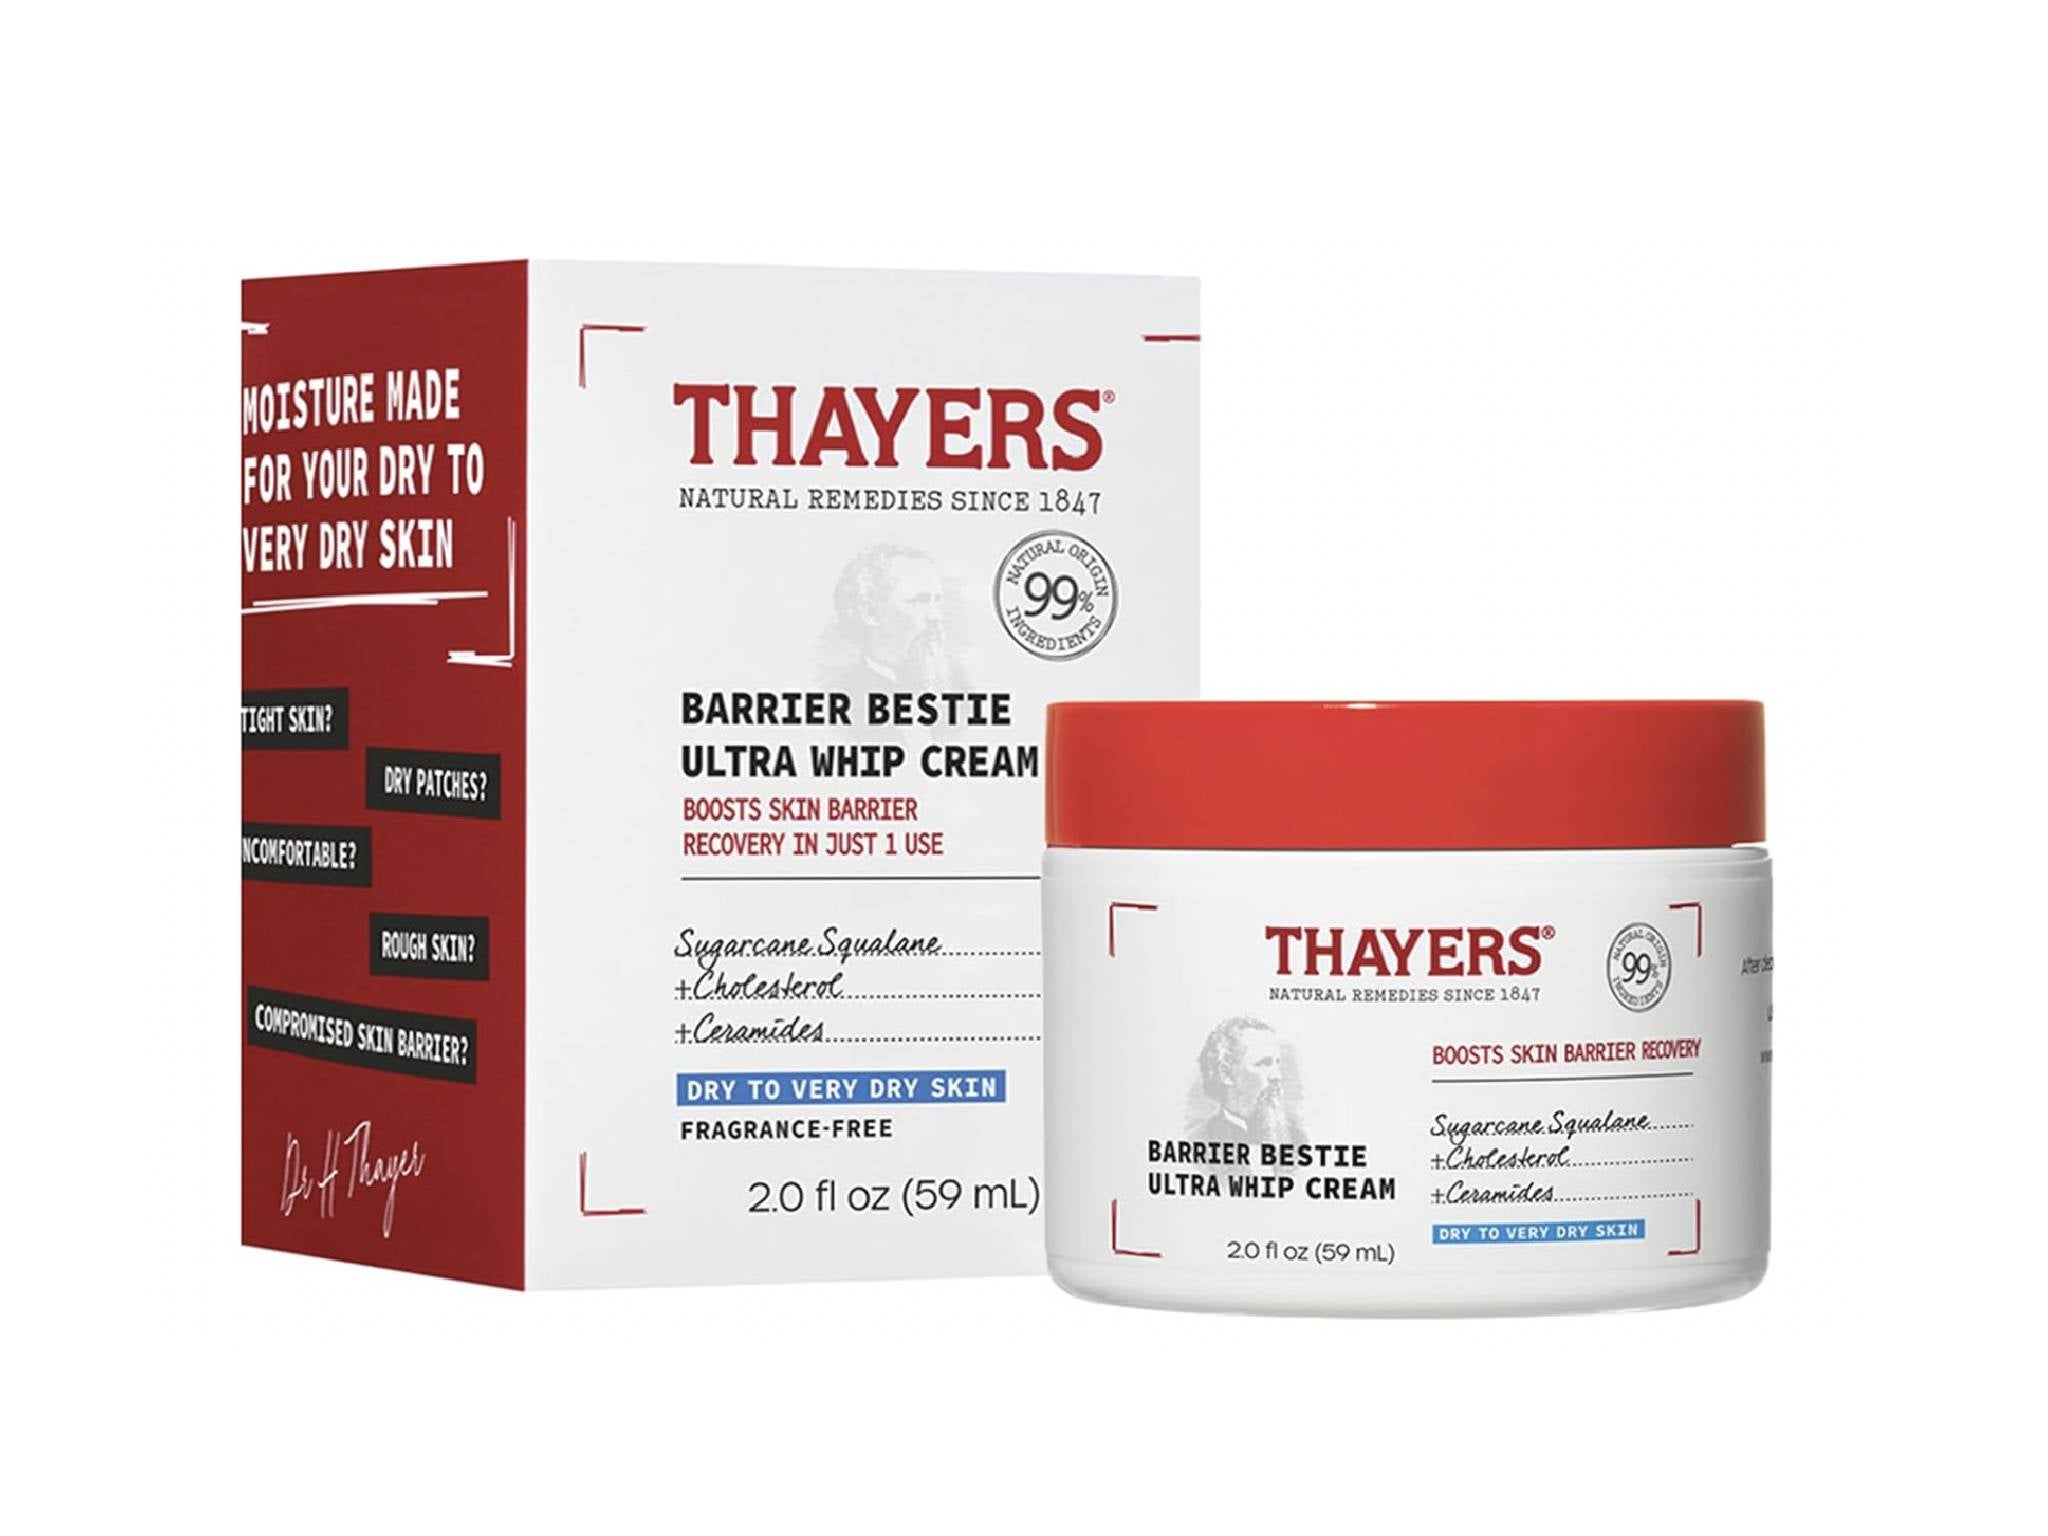 Thayers barrier bestie ultra whip cream